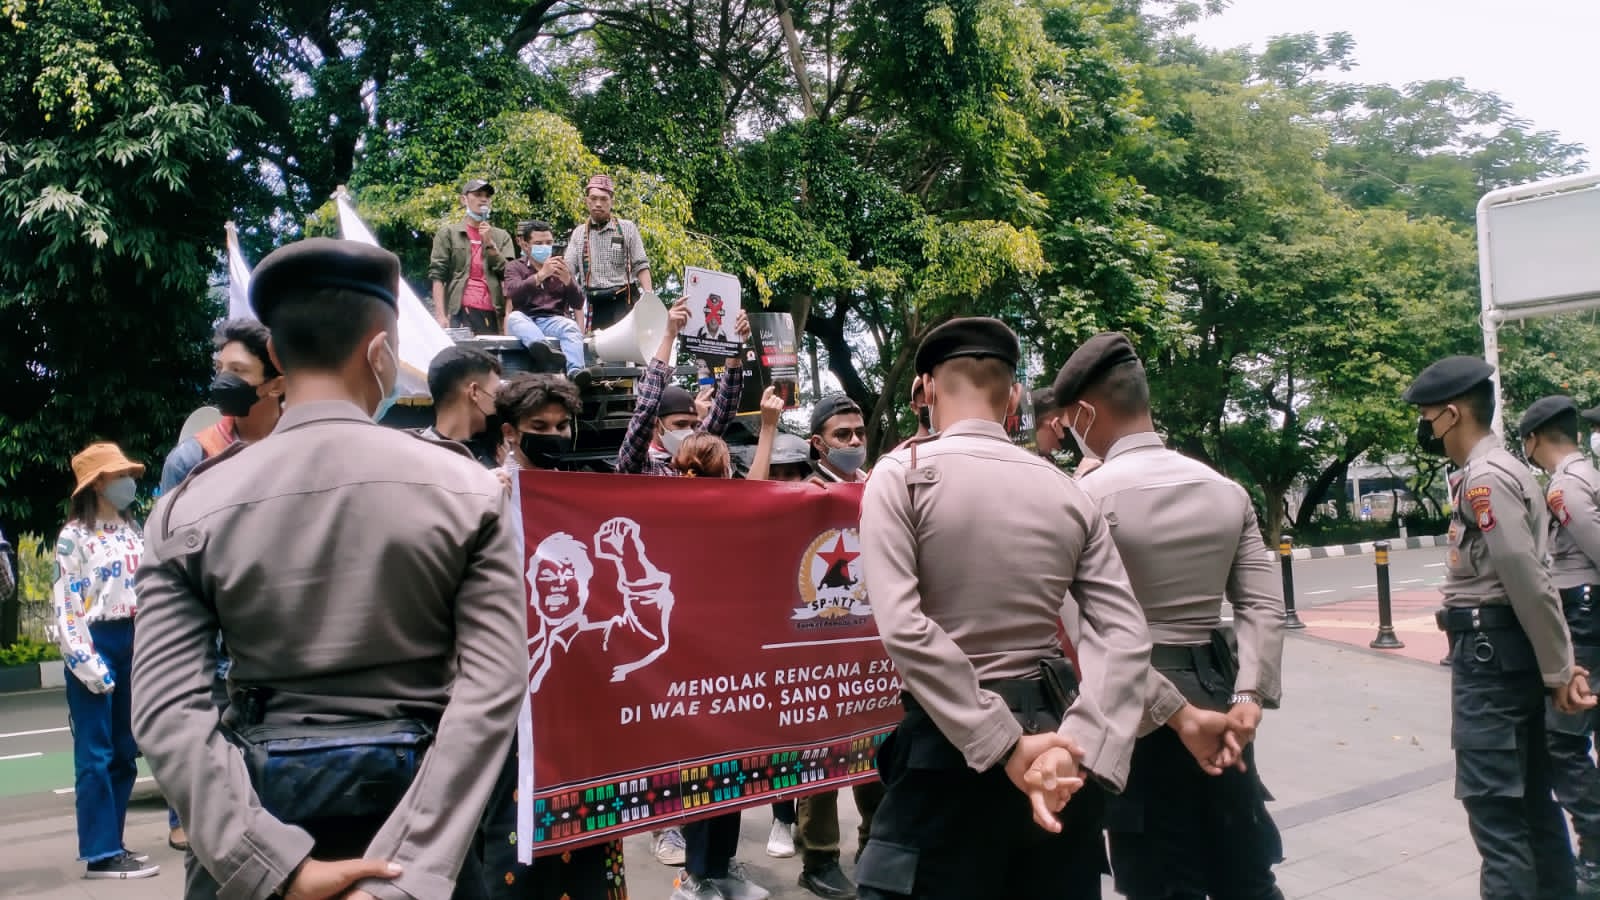 Tolak Geothermal Wae Sano Serikat Pemuda Ntt Jakarta Dan Pmb Pamulang Gelar Aksi Di Kementrian 1971